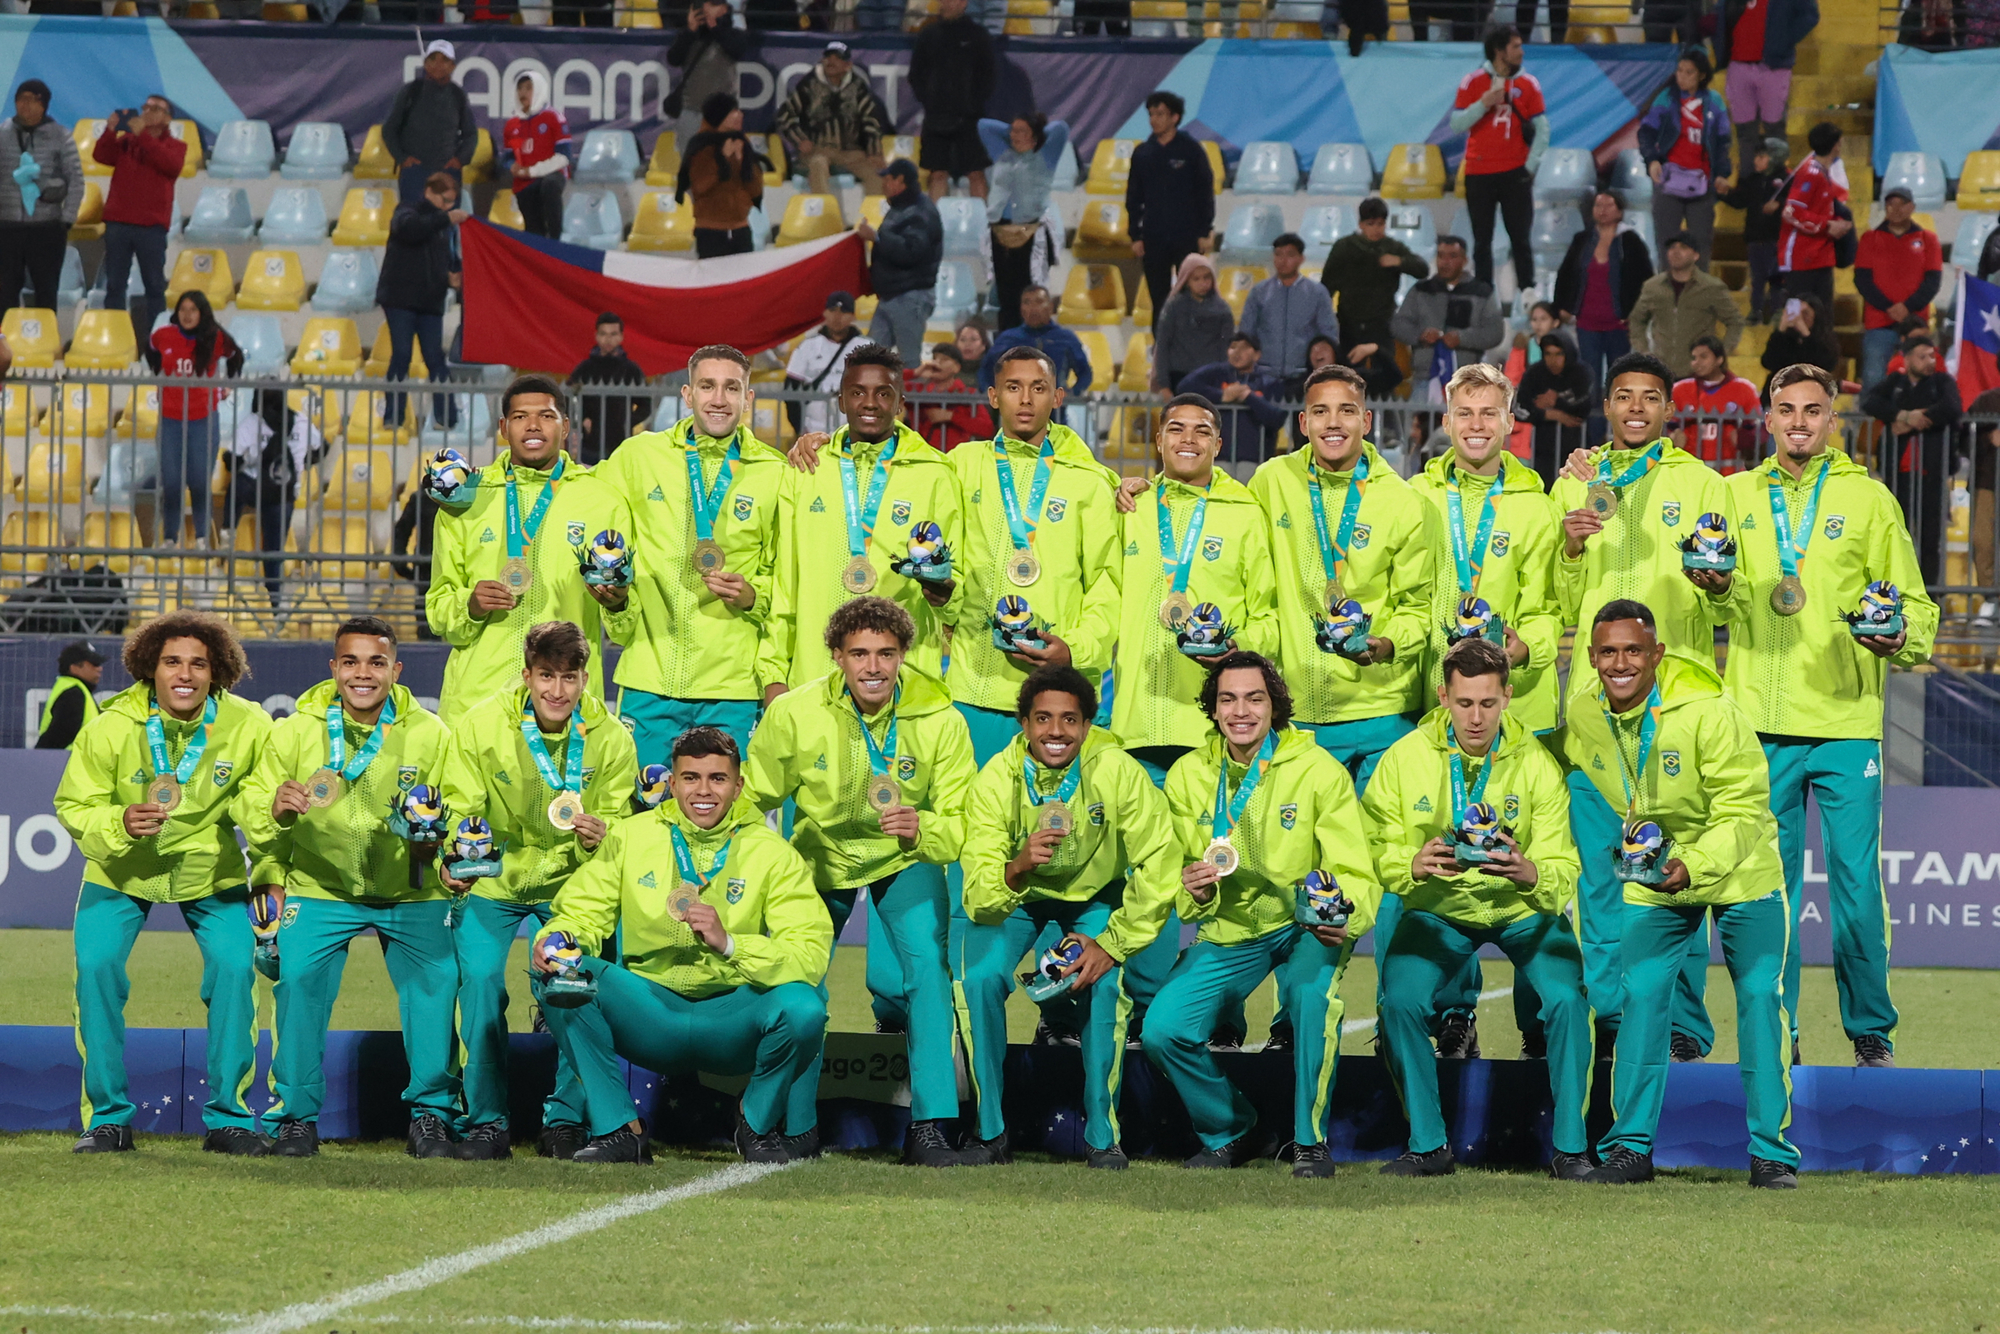 Vina del Mar, Chile - 11 / 04 / 2023: Seleção brasileira ganha ouro, em partida entre Brasil e Chile, na final dos Jogos Pan-Americanos, no Estádio Sausalito em Vina del Mar